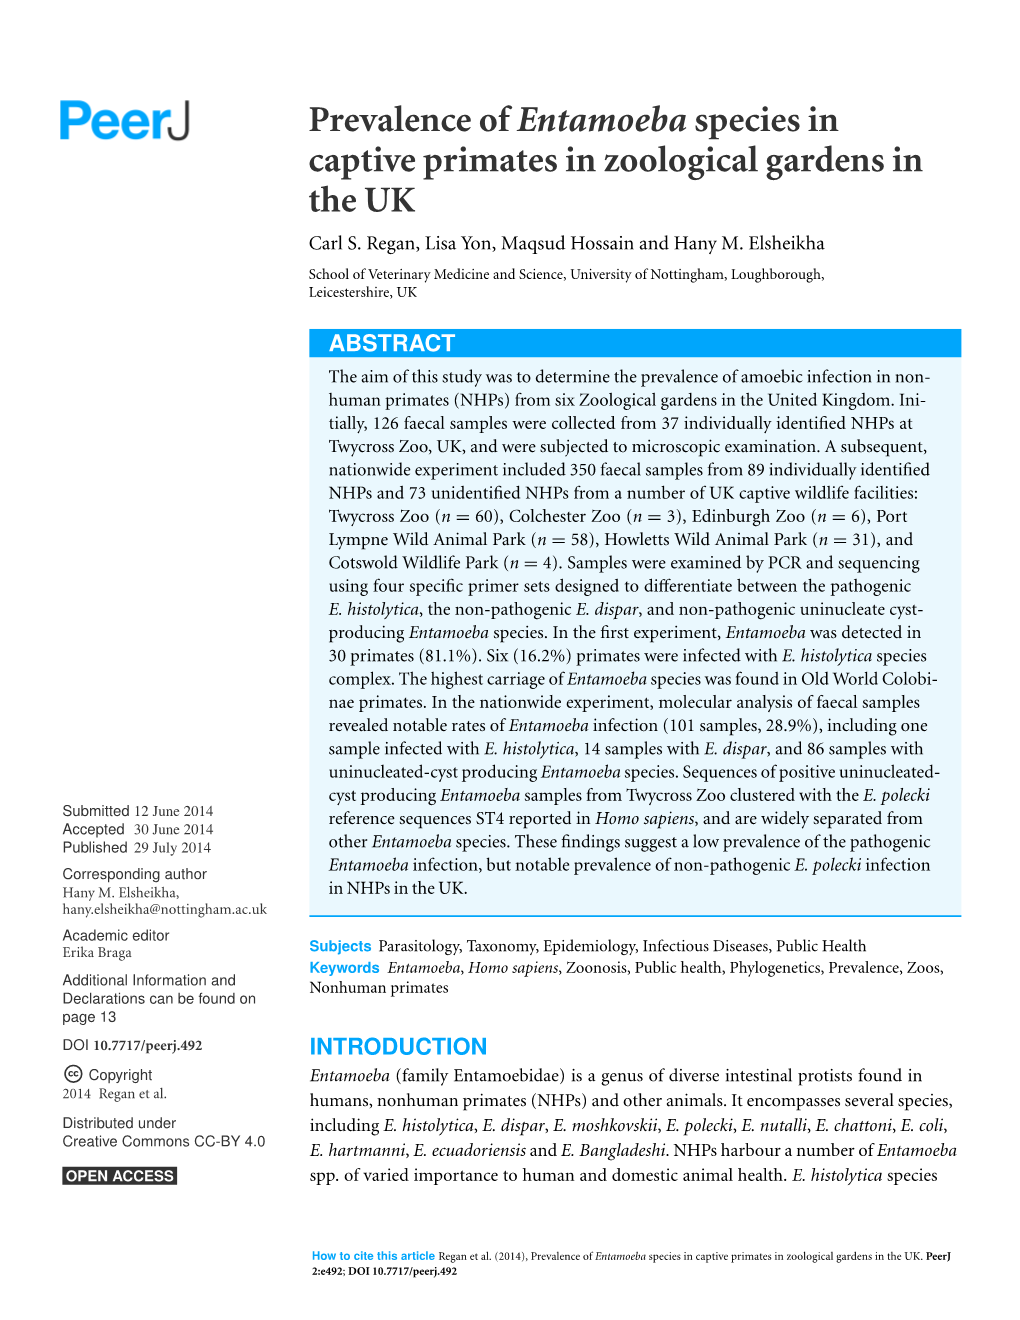 Prevalence of Entamoeba Species in Captive Primates in Zoological Gardens in the UK Carl S